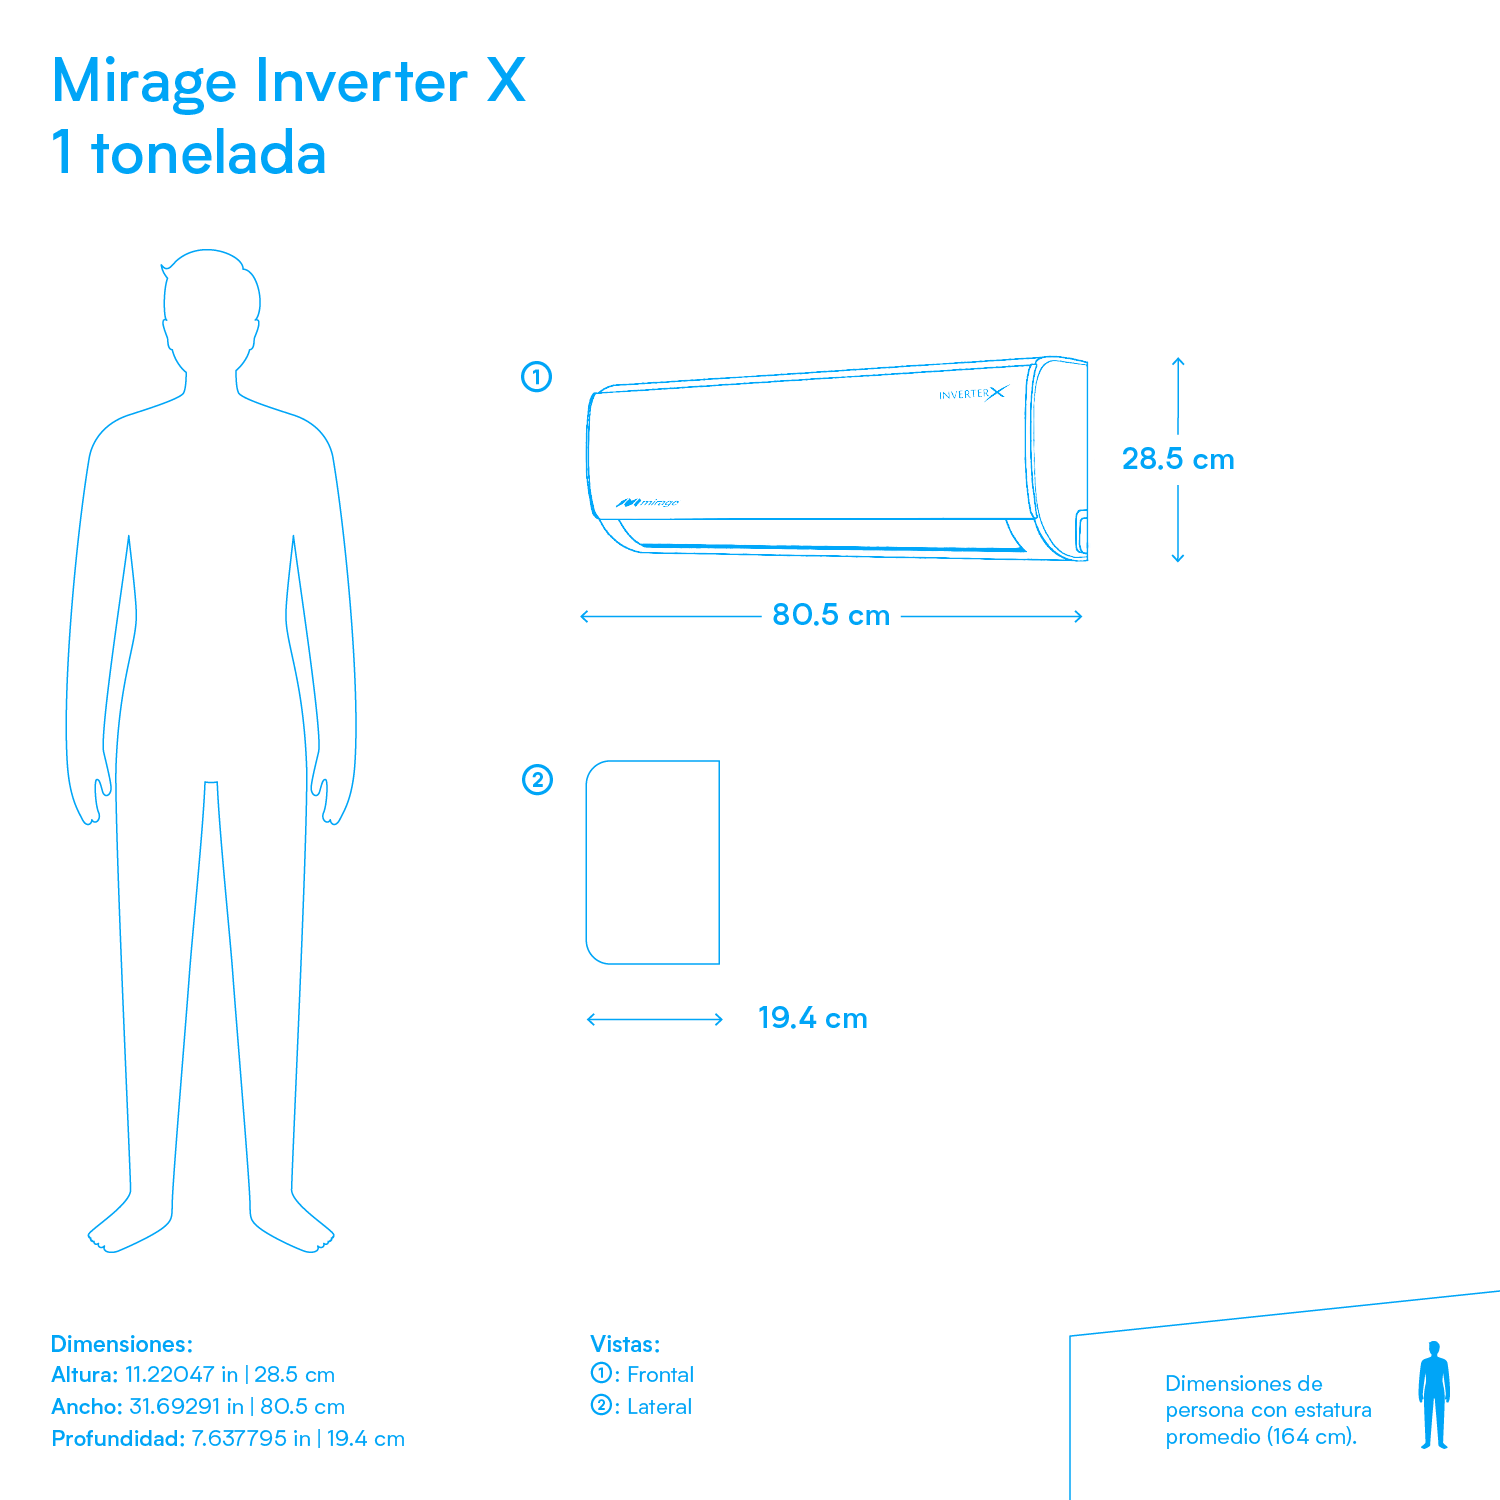 Minisplit Mirage Inverter X - 1 tonelada - 110v